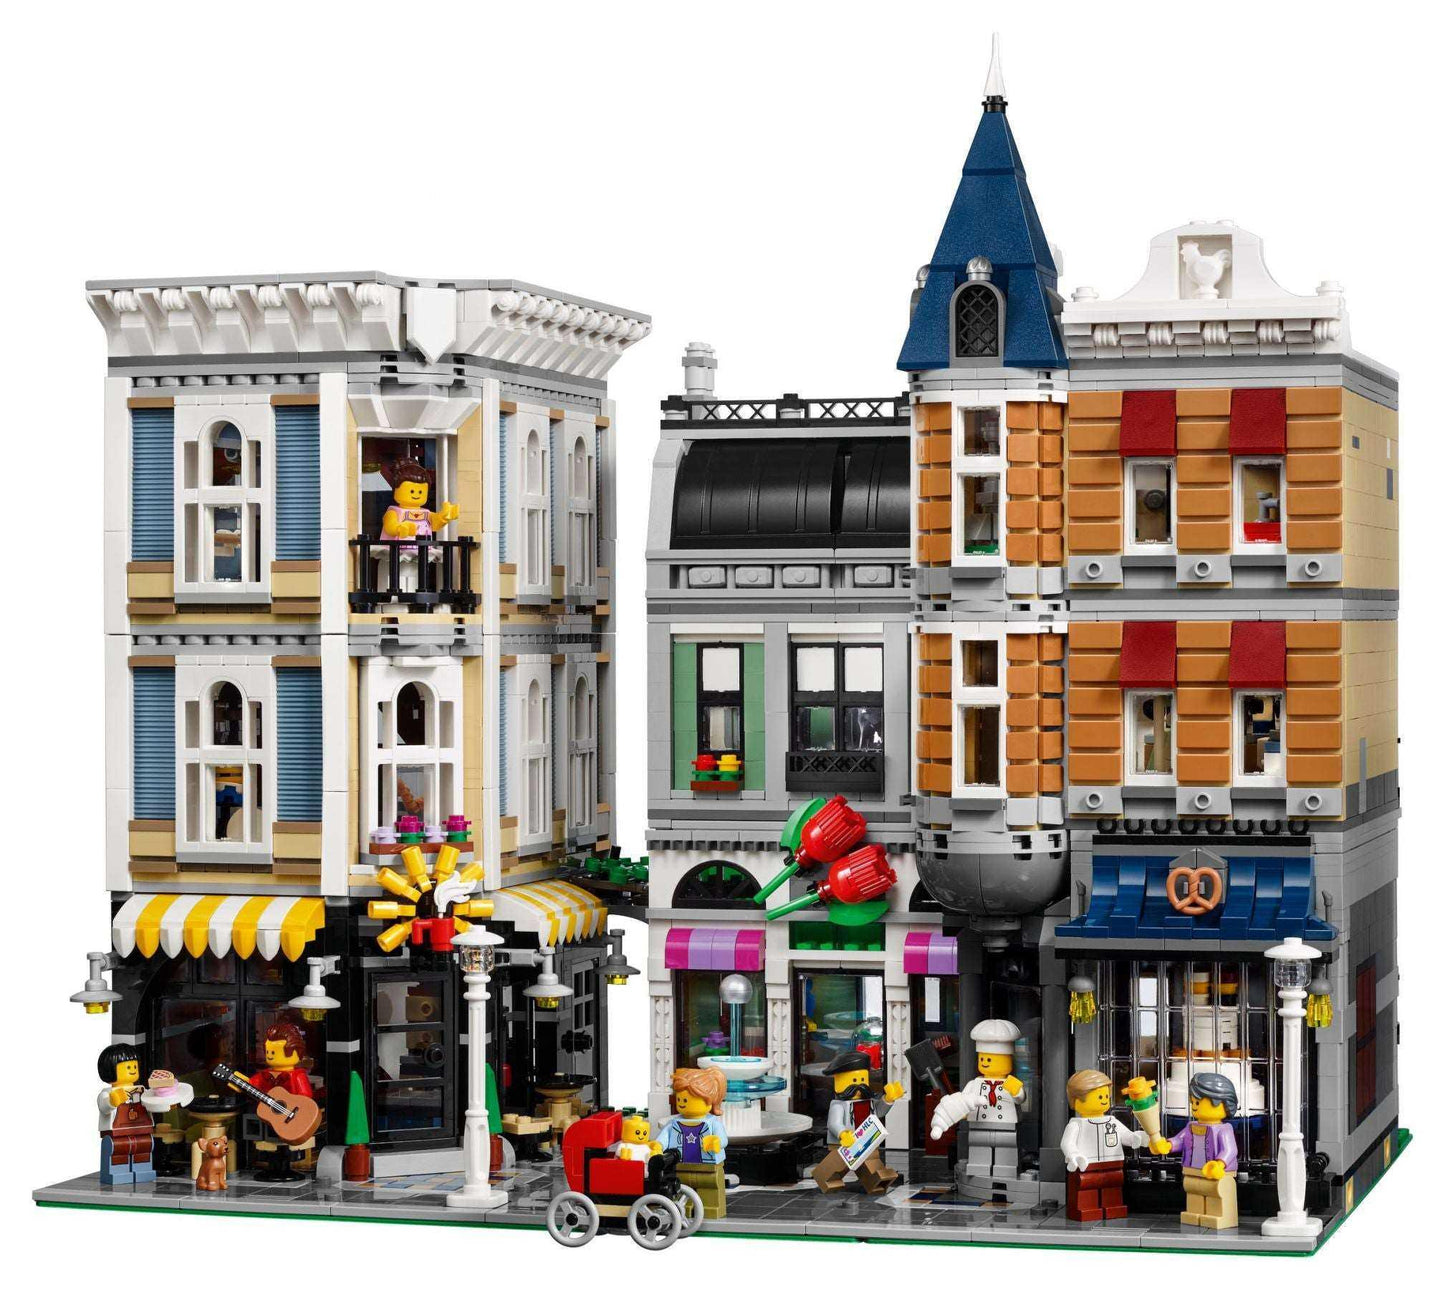 LEGO® Creator Expert 10255 Stadtleben - Peer Online Shop